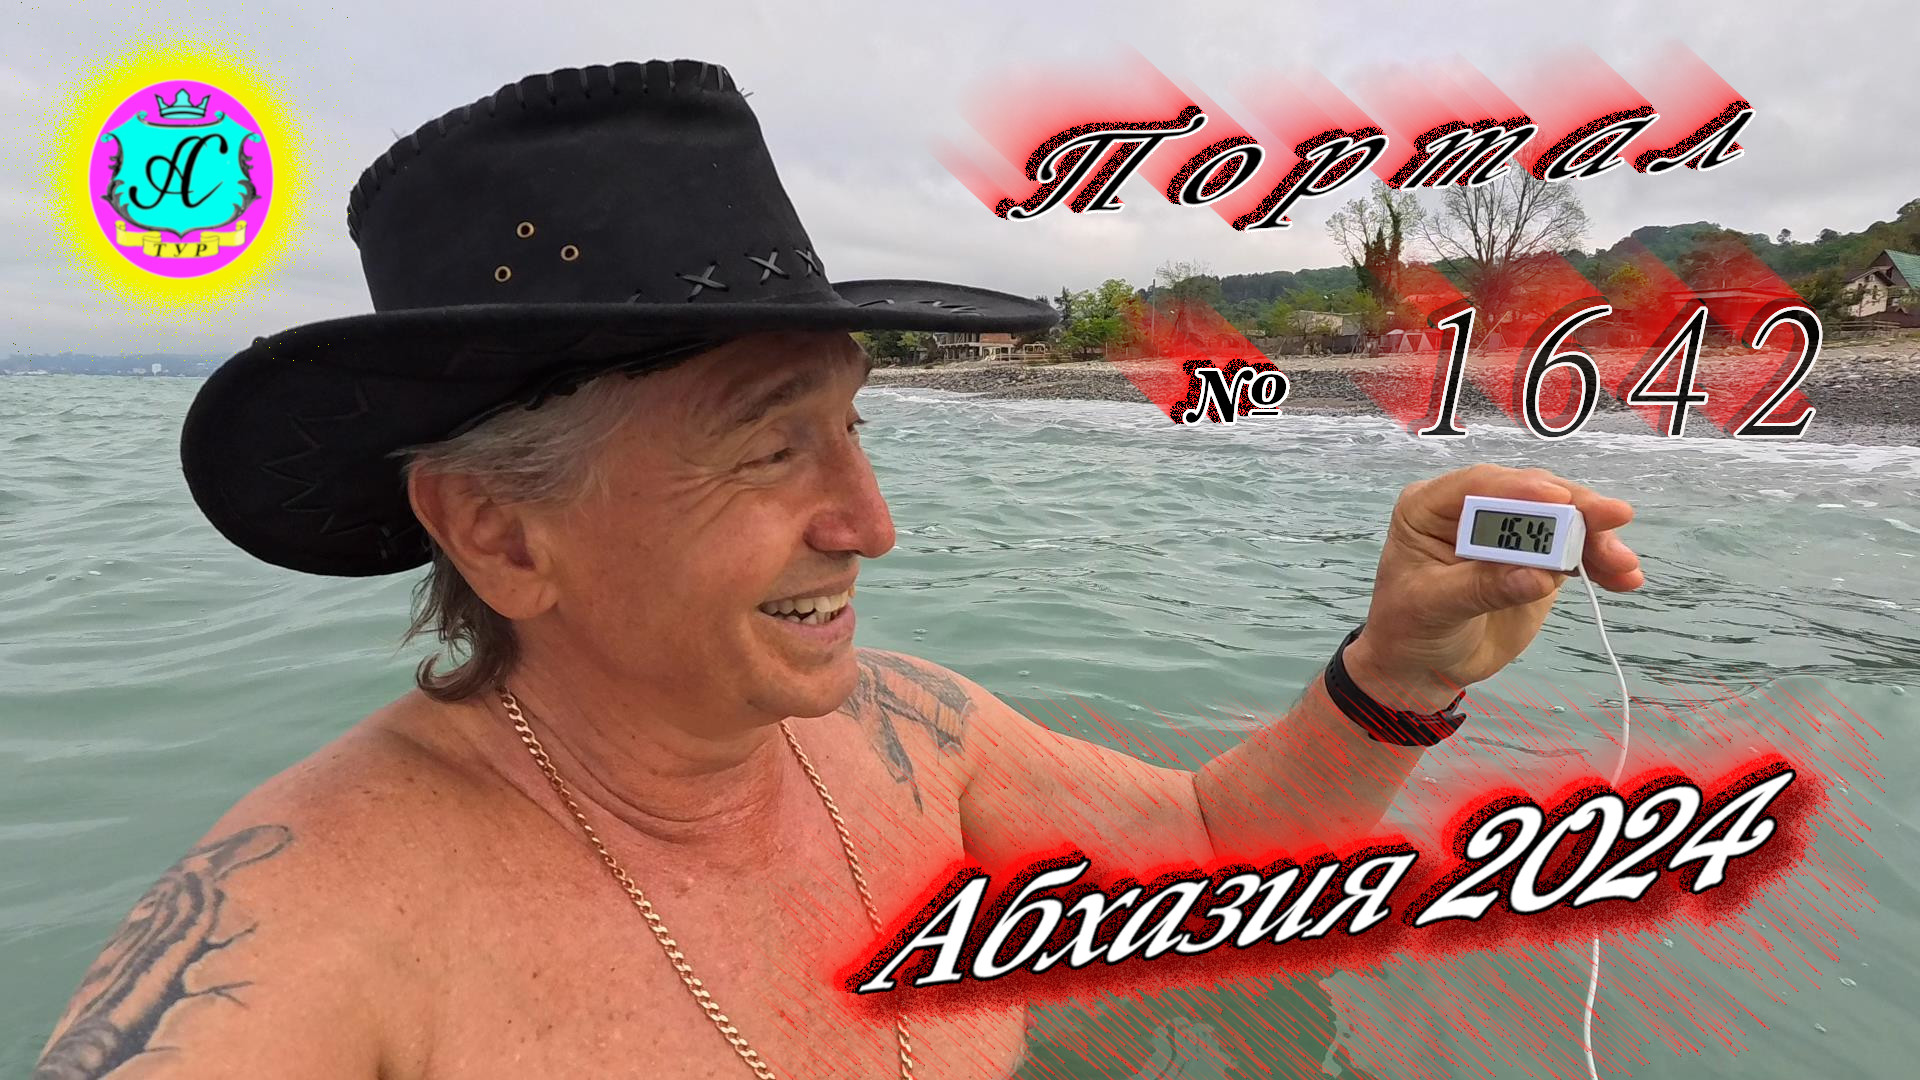 #Абхазия2024 🌴 20 апреля❗Выпуск №1642❗ Погода от Серого Волка🌡вчера 20°🌡ночью +14°🐬море +16,4°